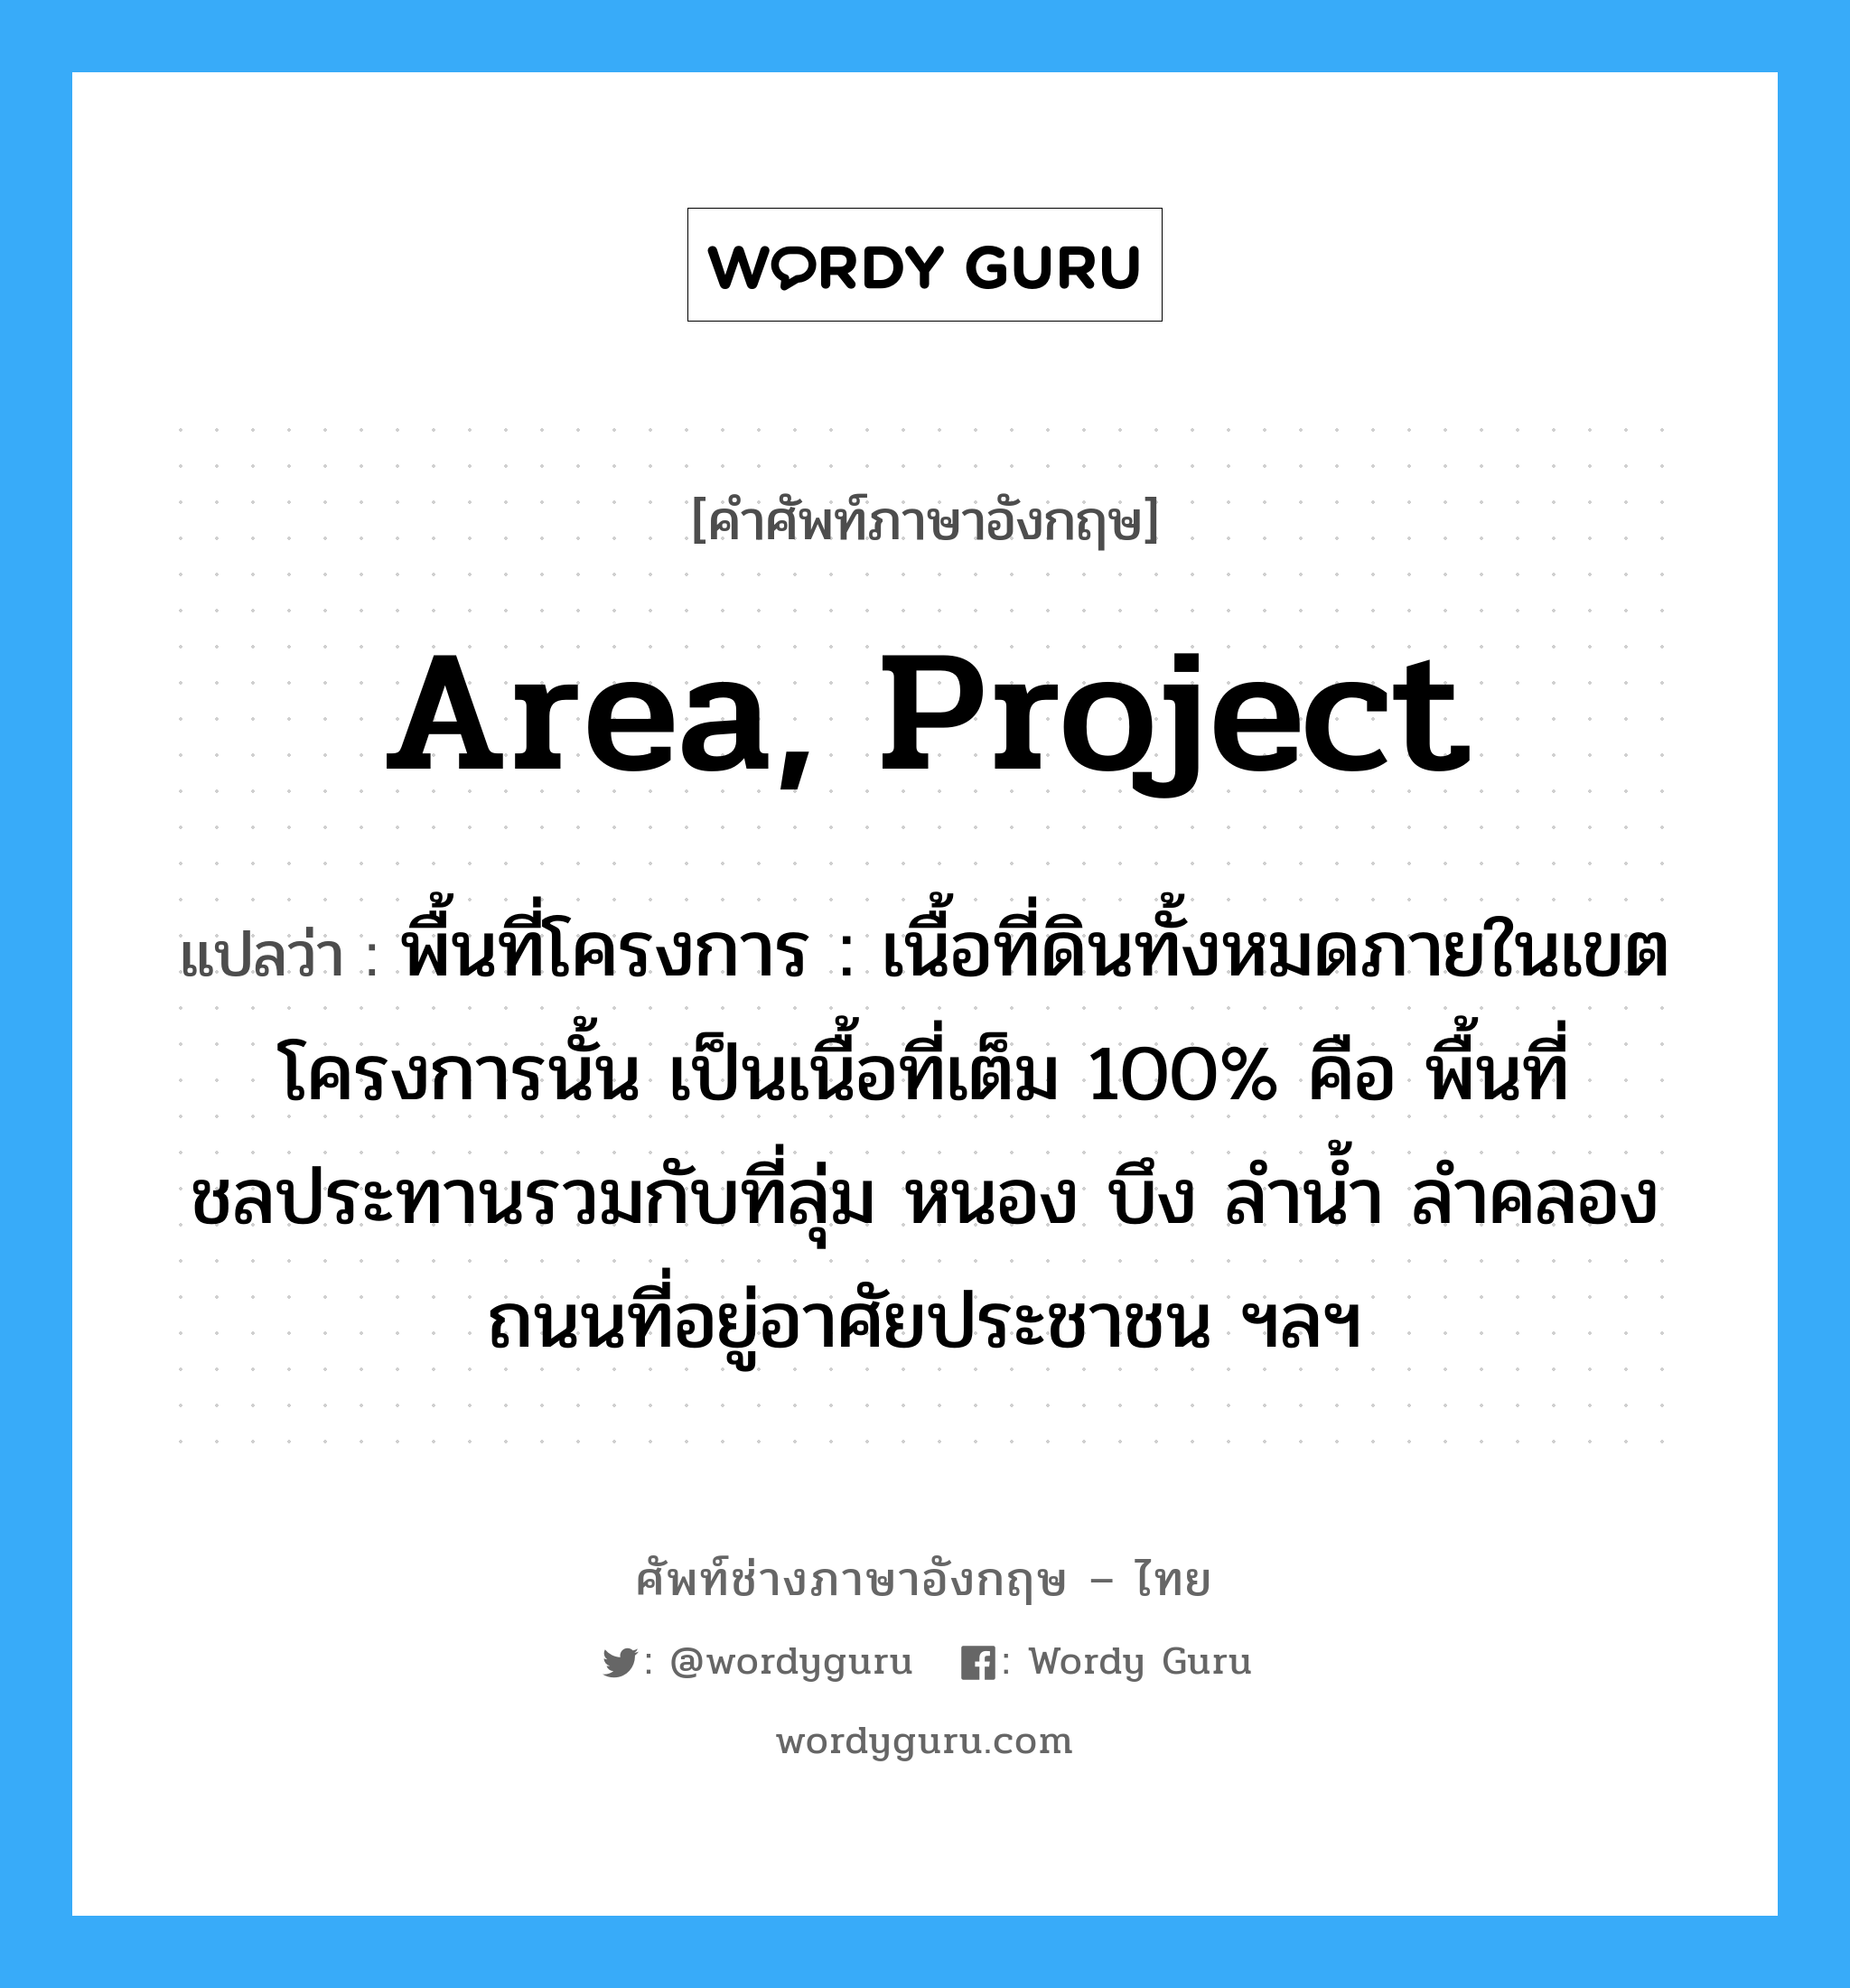 area, project แปลว่า?, คำศัพท์ช่างภาษาอังกฤษ - ไทย area, project คำศัพท์ภาษาอังกฤษ area, project แปลว่า พื้นที่โครงการ : เนื้อที่ดินทั้งหมดภายในเขตโครงการนั้น เป็นเนื้อที่เต็ม 100% คือ พื้นที่ชลประทานรวมกับที่ลุ่ม หนอง บึง ลำน้ำ ลำคลอง ถนนที่อยู่อาศัยประชาชน ฯลฯ